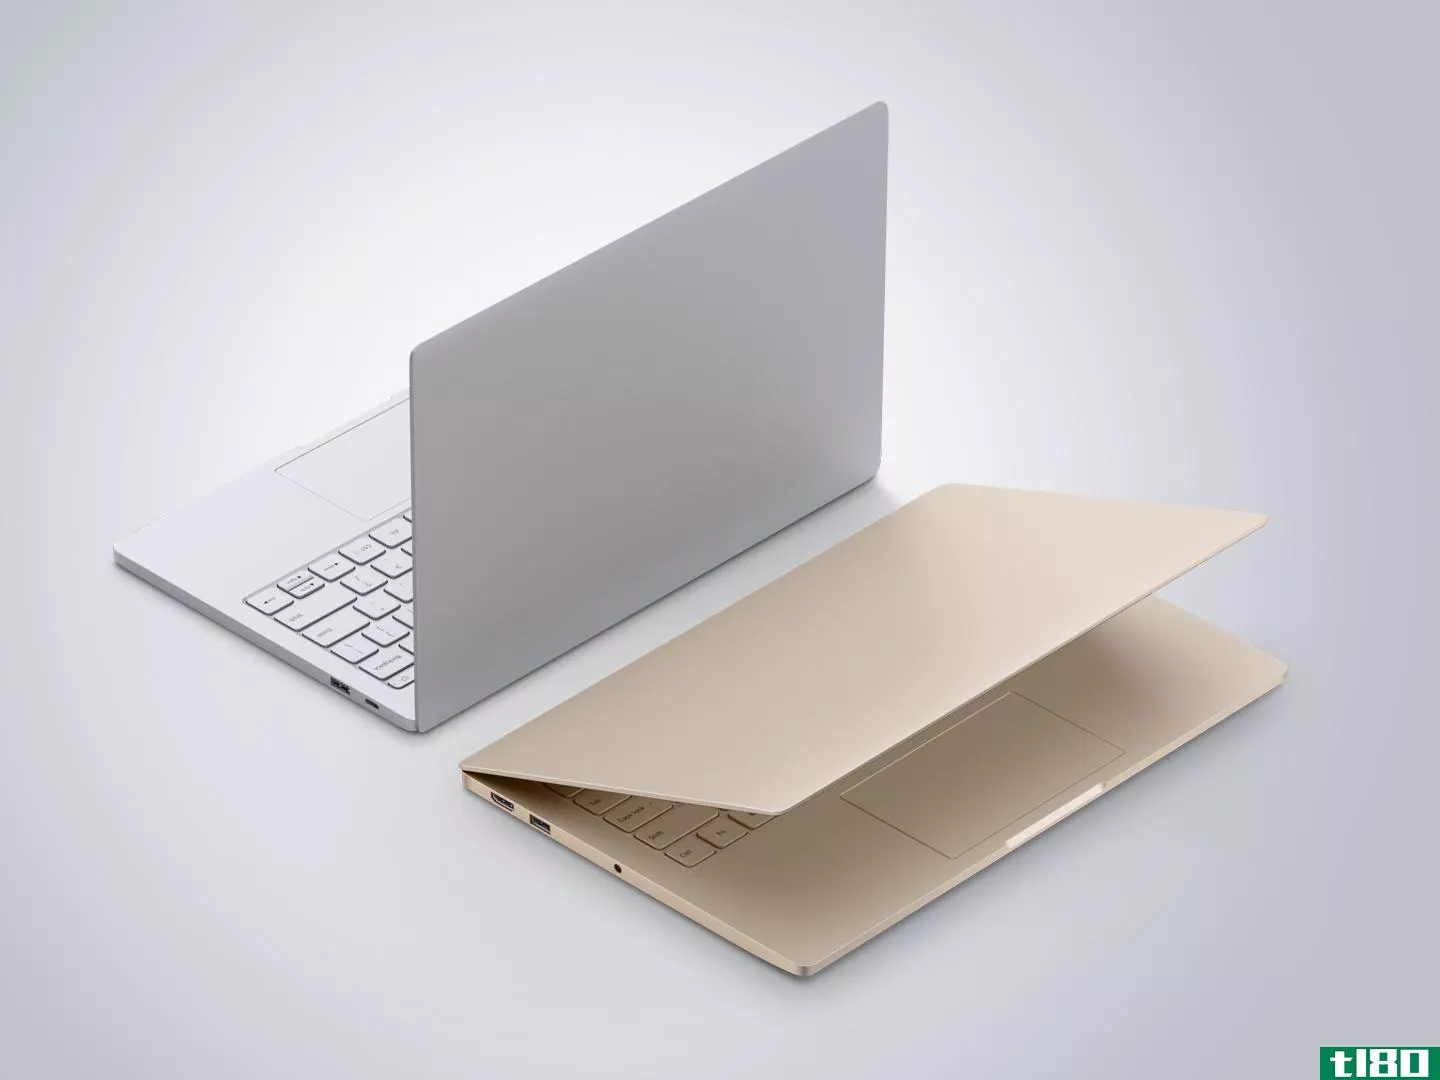 小米与售价750美元的macbook竞争对手进军笔记本电脑业务